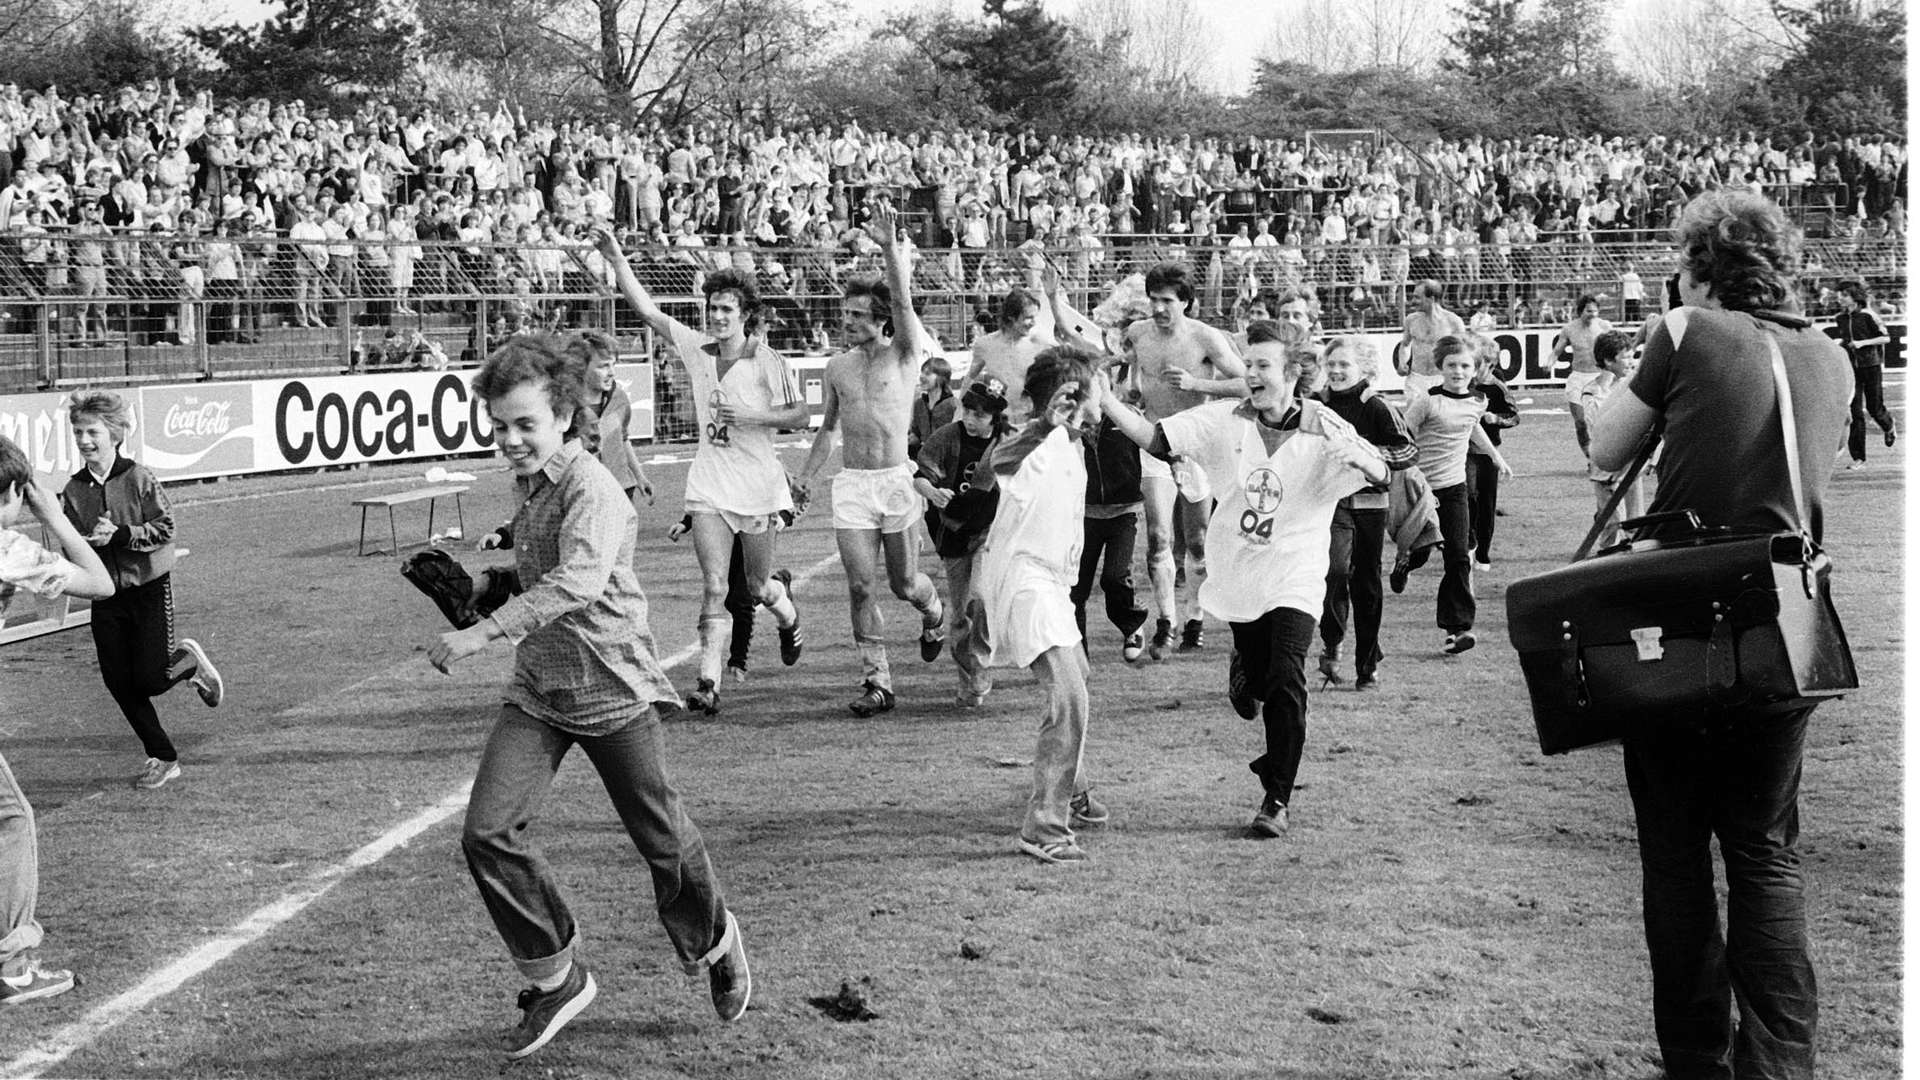 Bundesliga-Aufstieg 1979